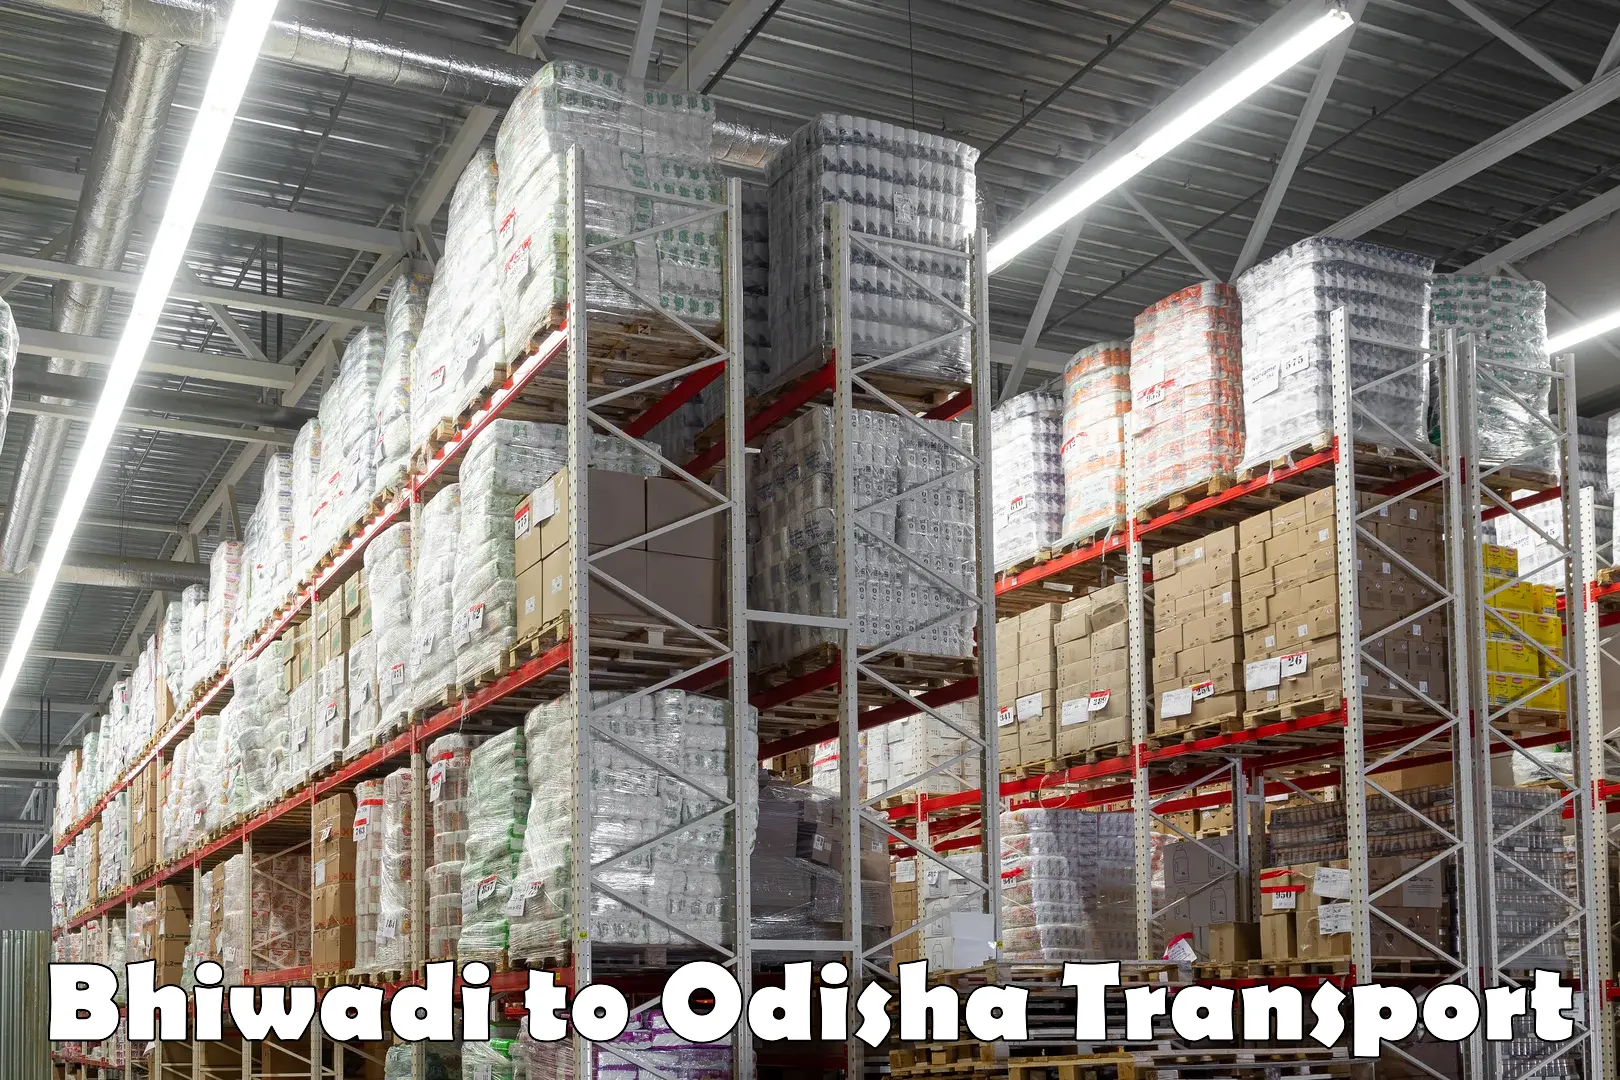 Transport in sharing Bhiwadi to Odisha